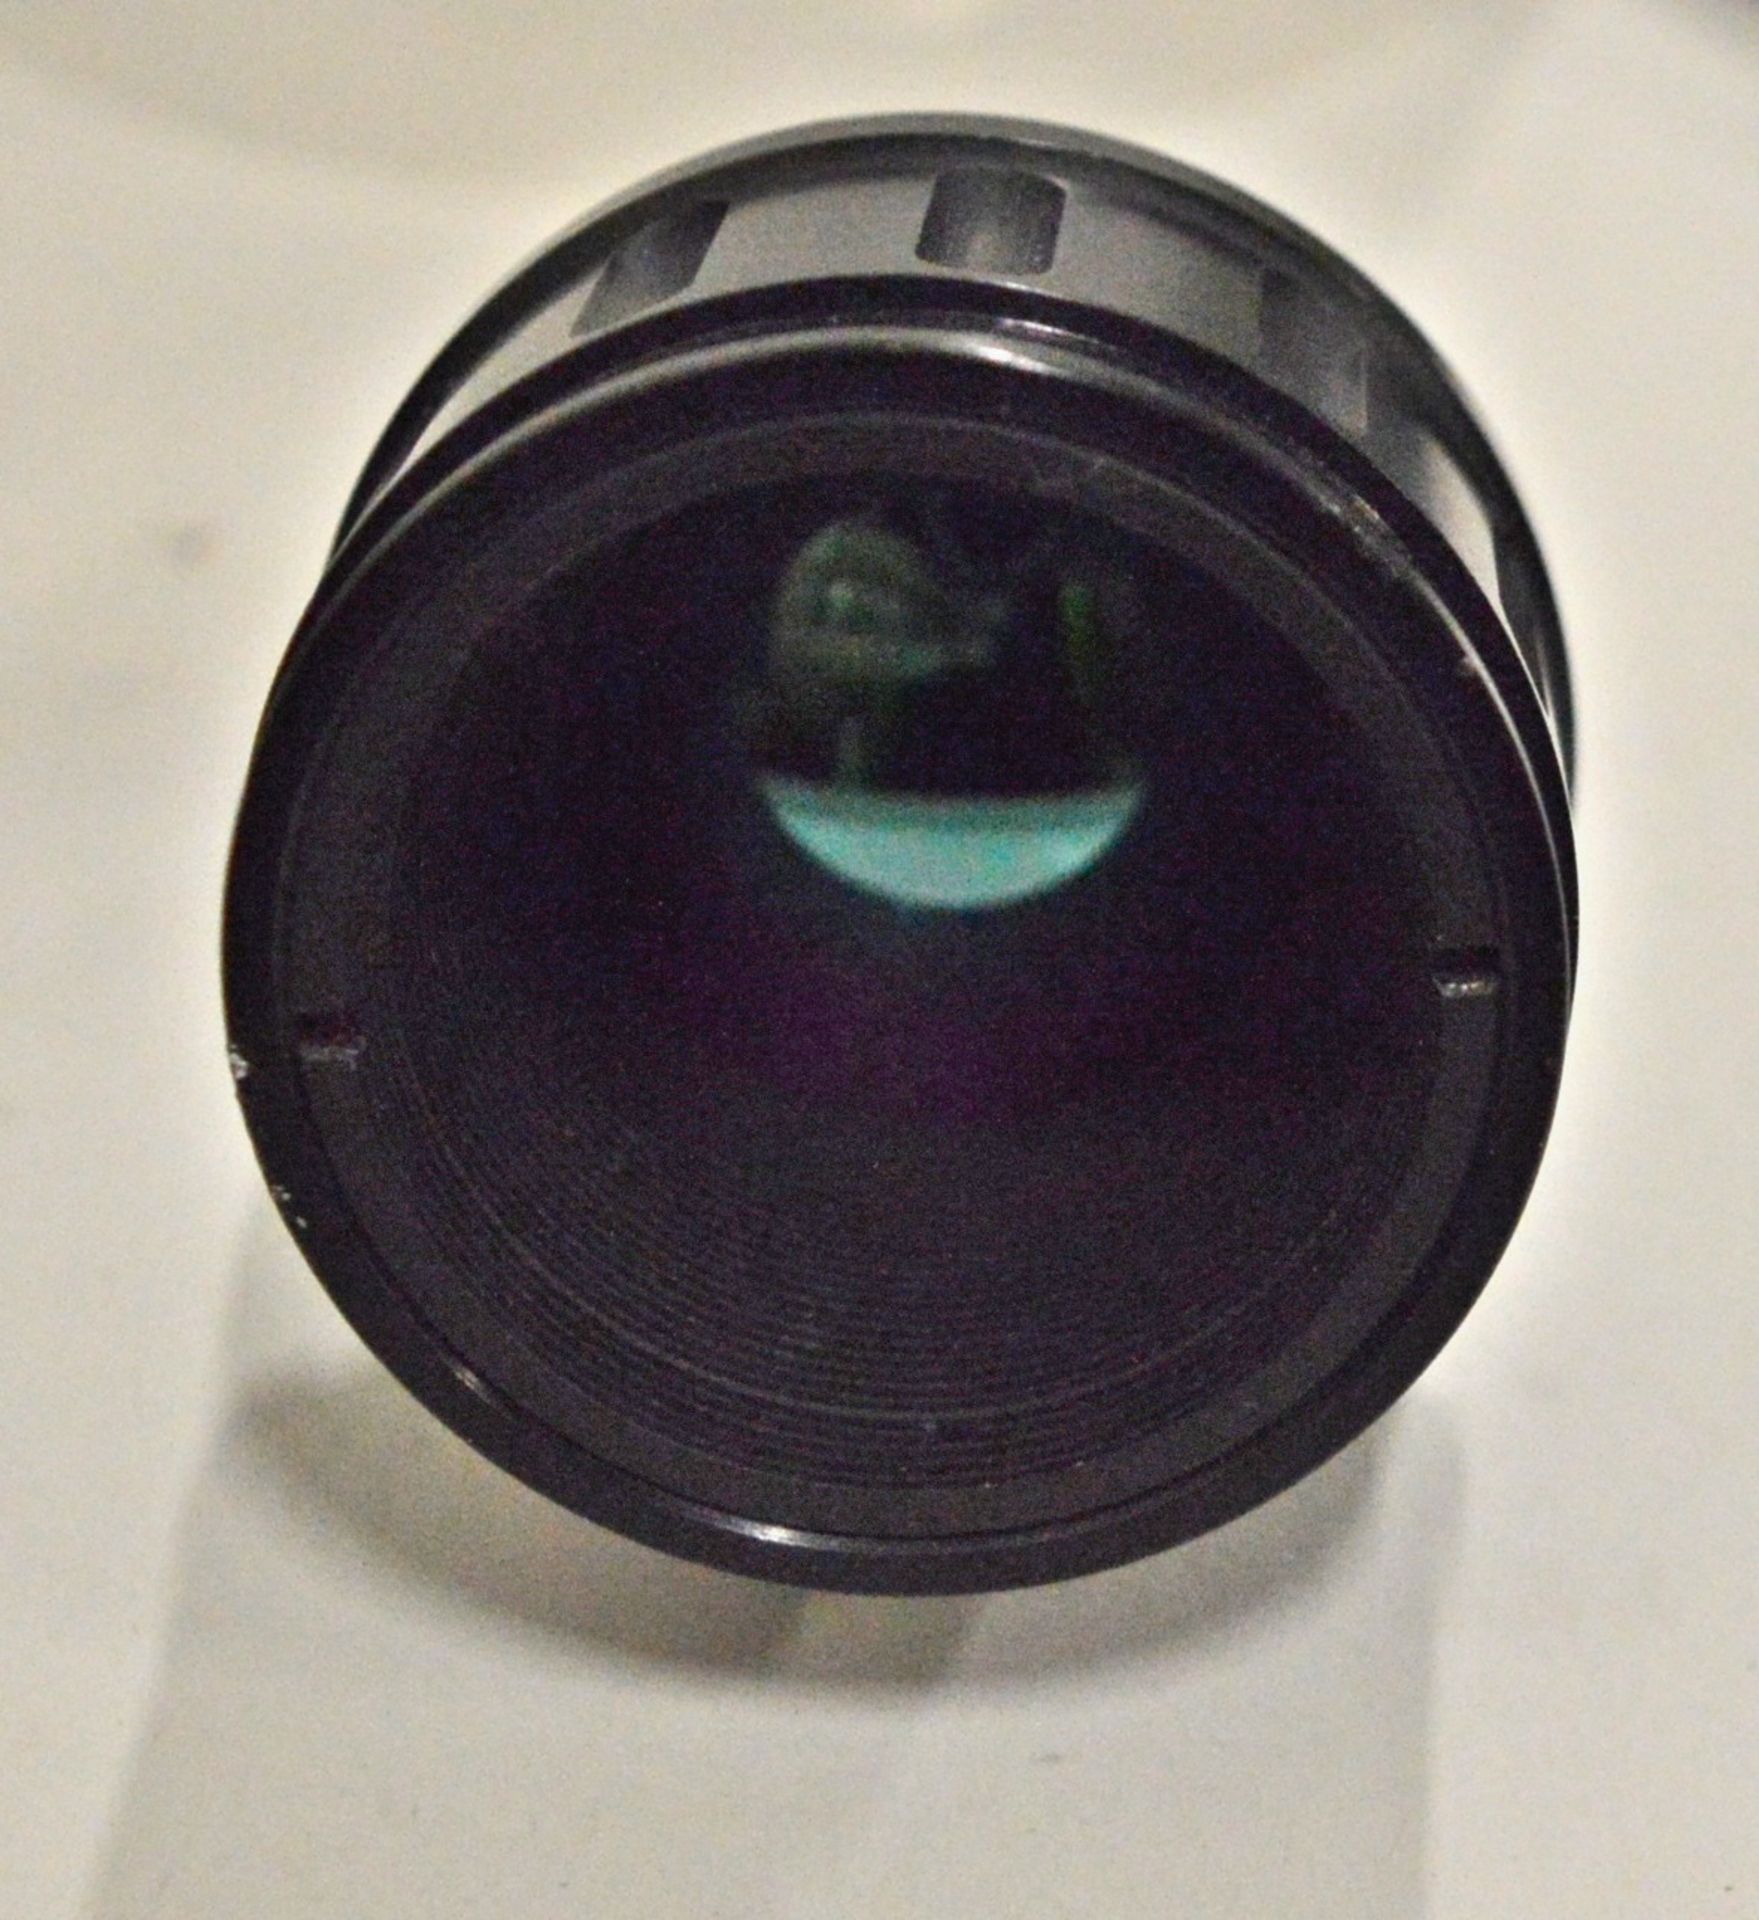 J.T.I 41348-0003 30mm 3-5um F/4.0 Lens Camera Lens - No Markings/Model/Make - Image 5 of 6